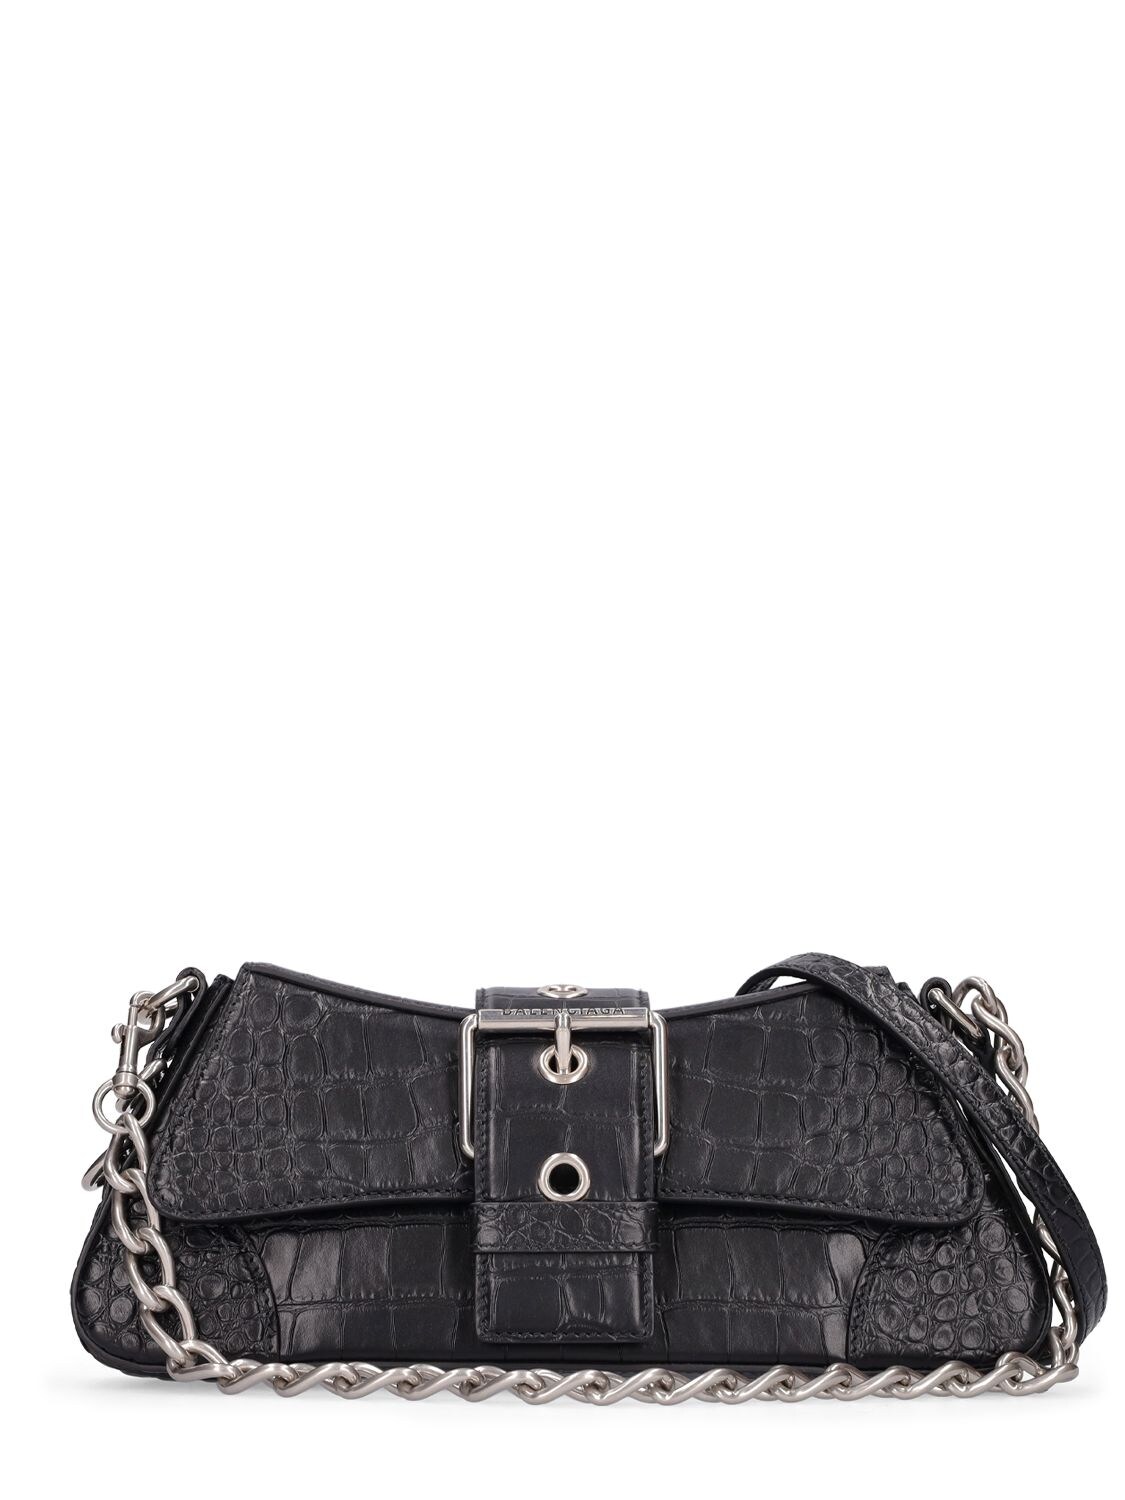 BALENCIAGA Small Lindsay Embossed Leather Bag